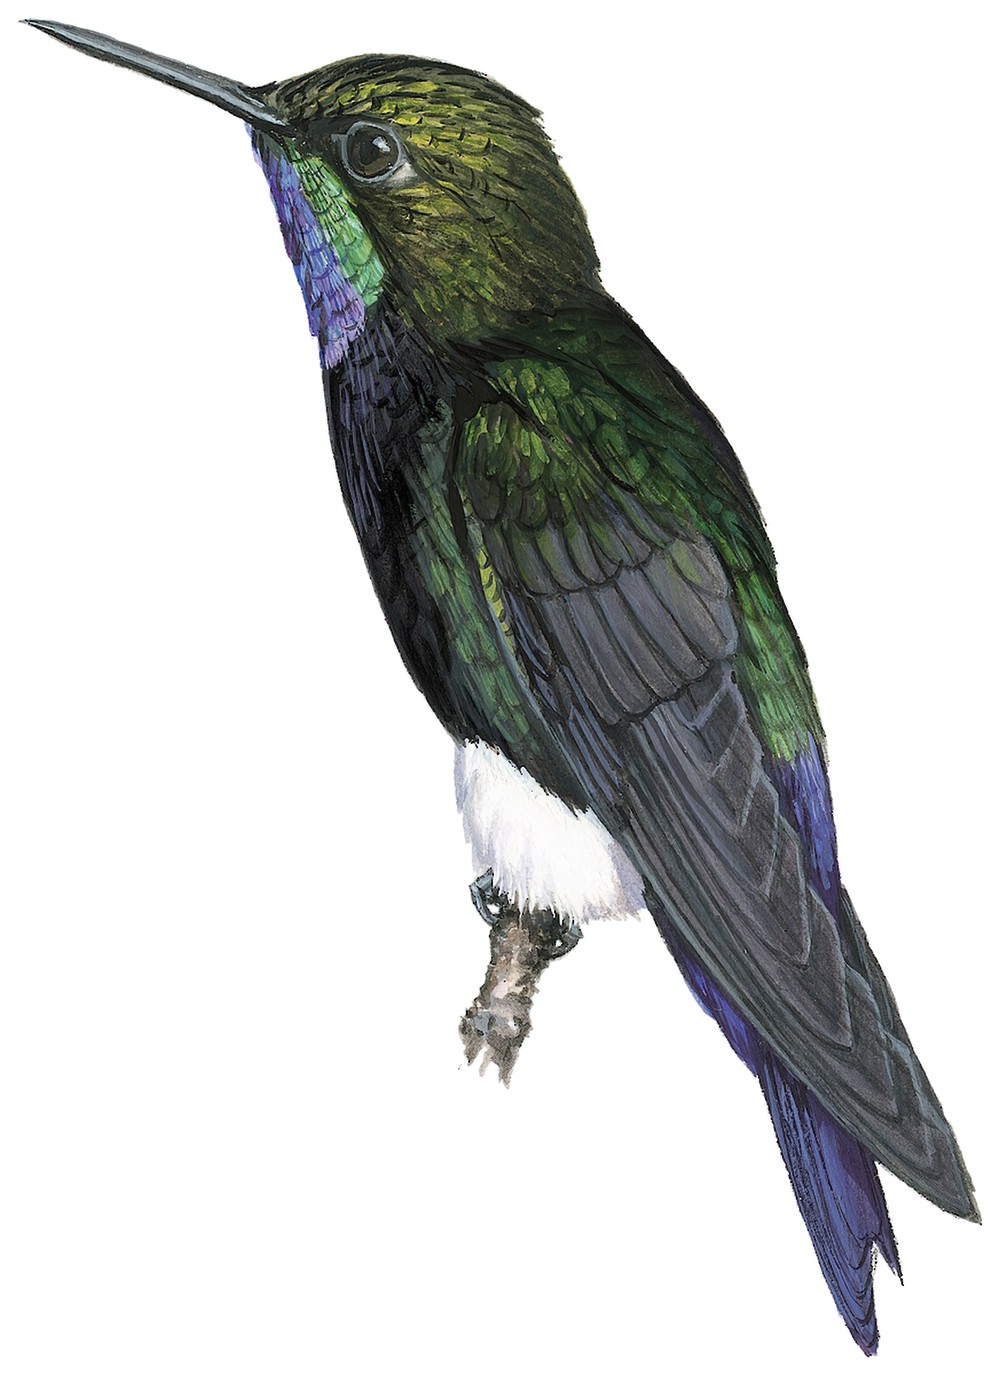 饰颈毛腿蜂鸟 / Gorgeted Puffleg / Eriocnemis isabellae